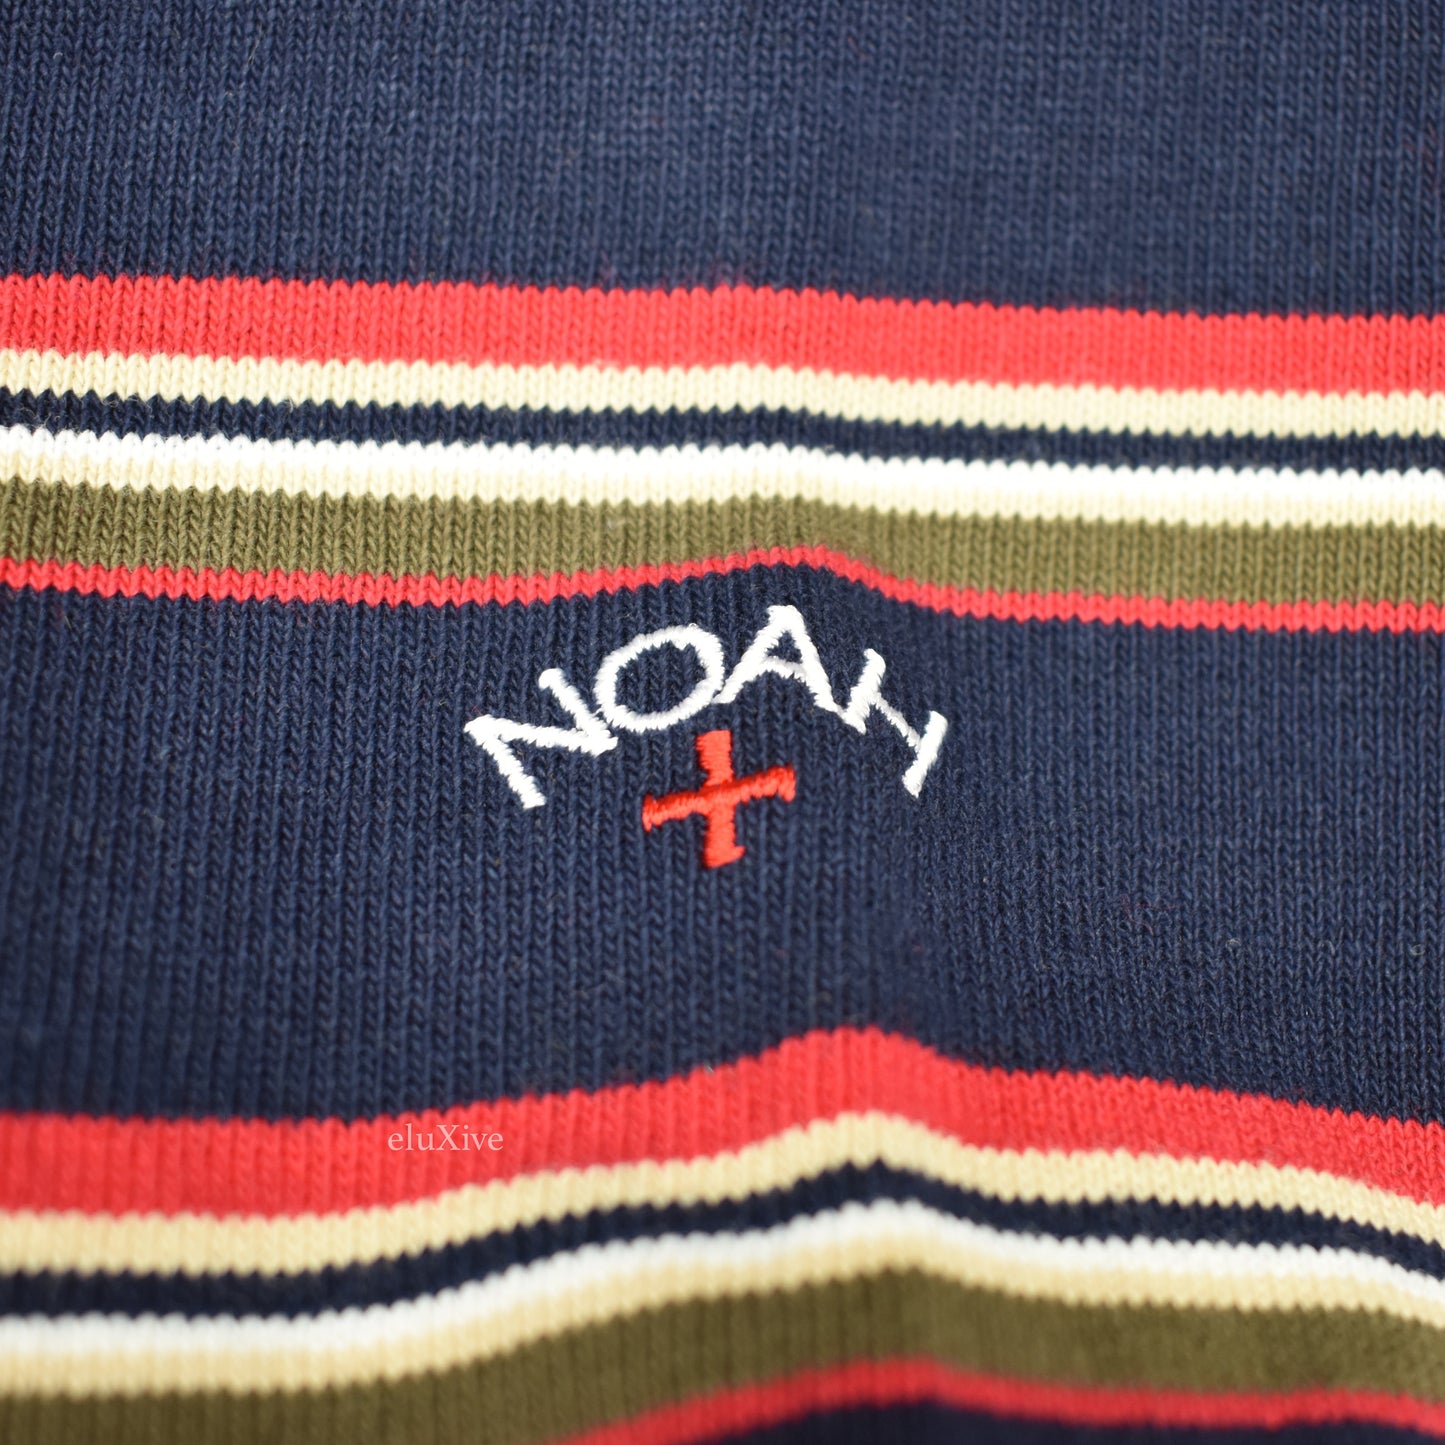 Noah - Striped Nautical Logo Sweatshirt